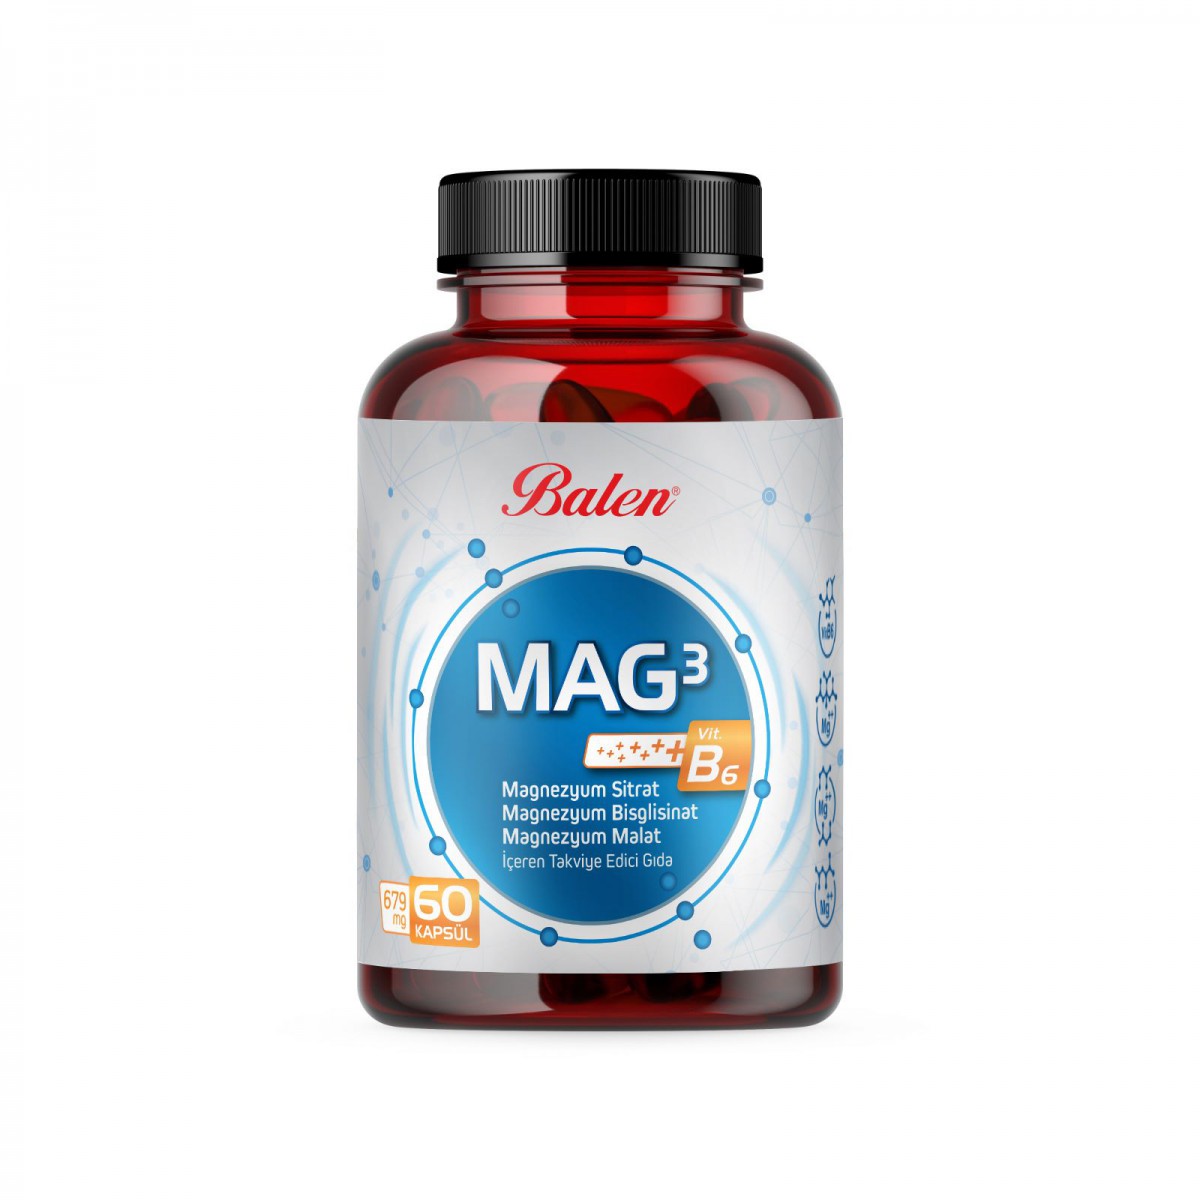 Mag 3 Magnezyum Sitrat & Bisglisinat & Malat 679 mg *60 kapsül